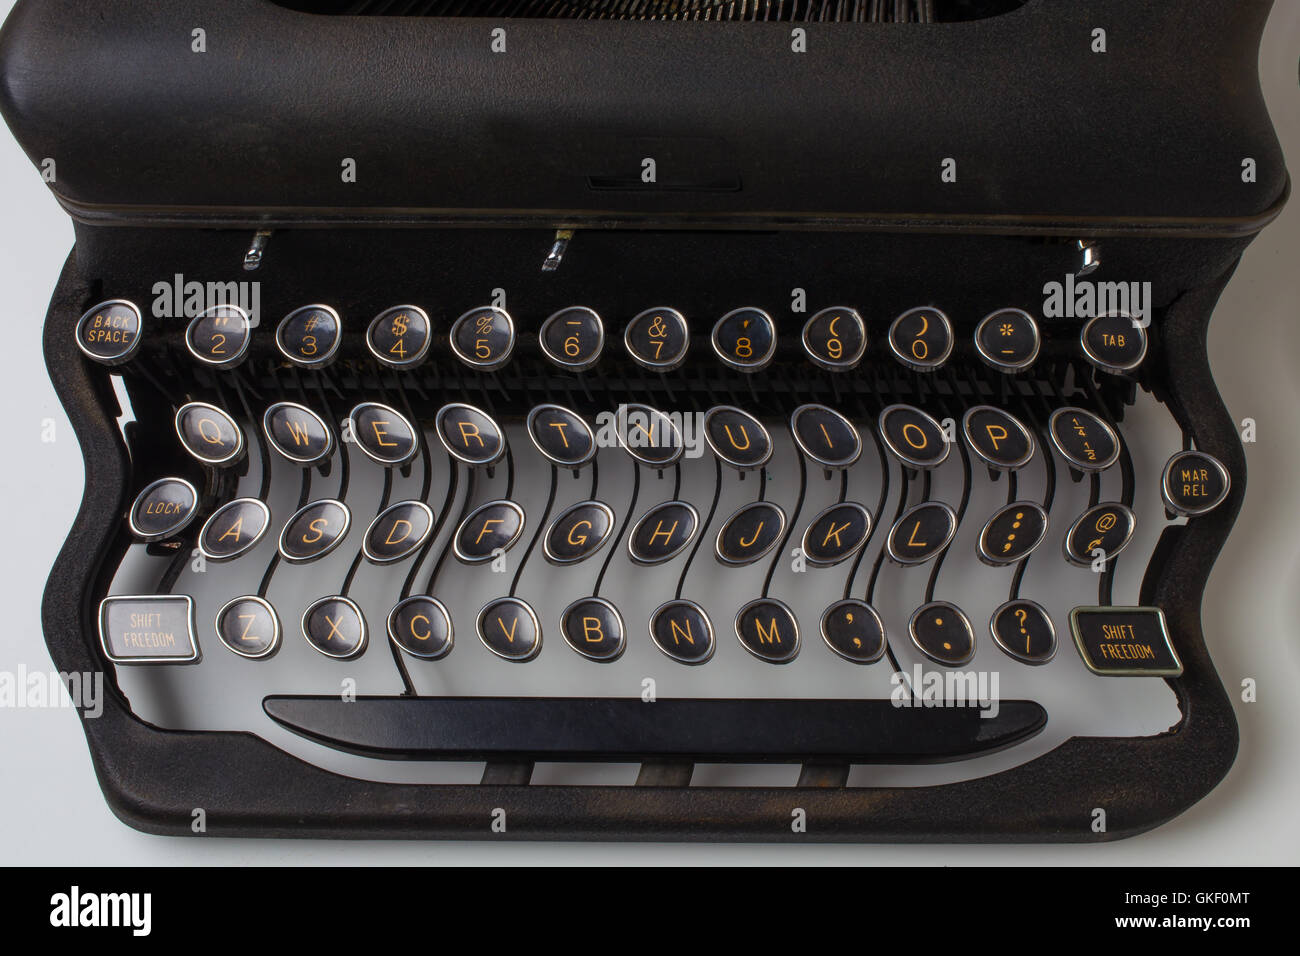 Typewriter Wavy Keys Stock Photo